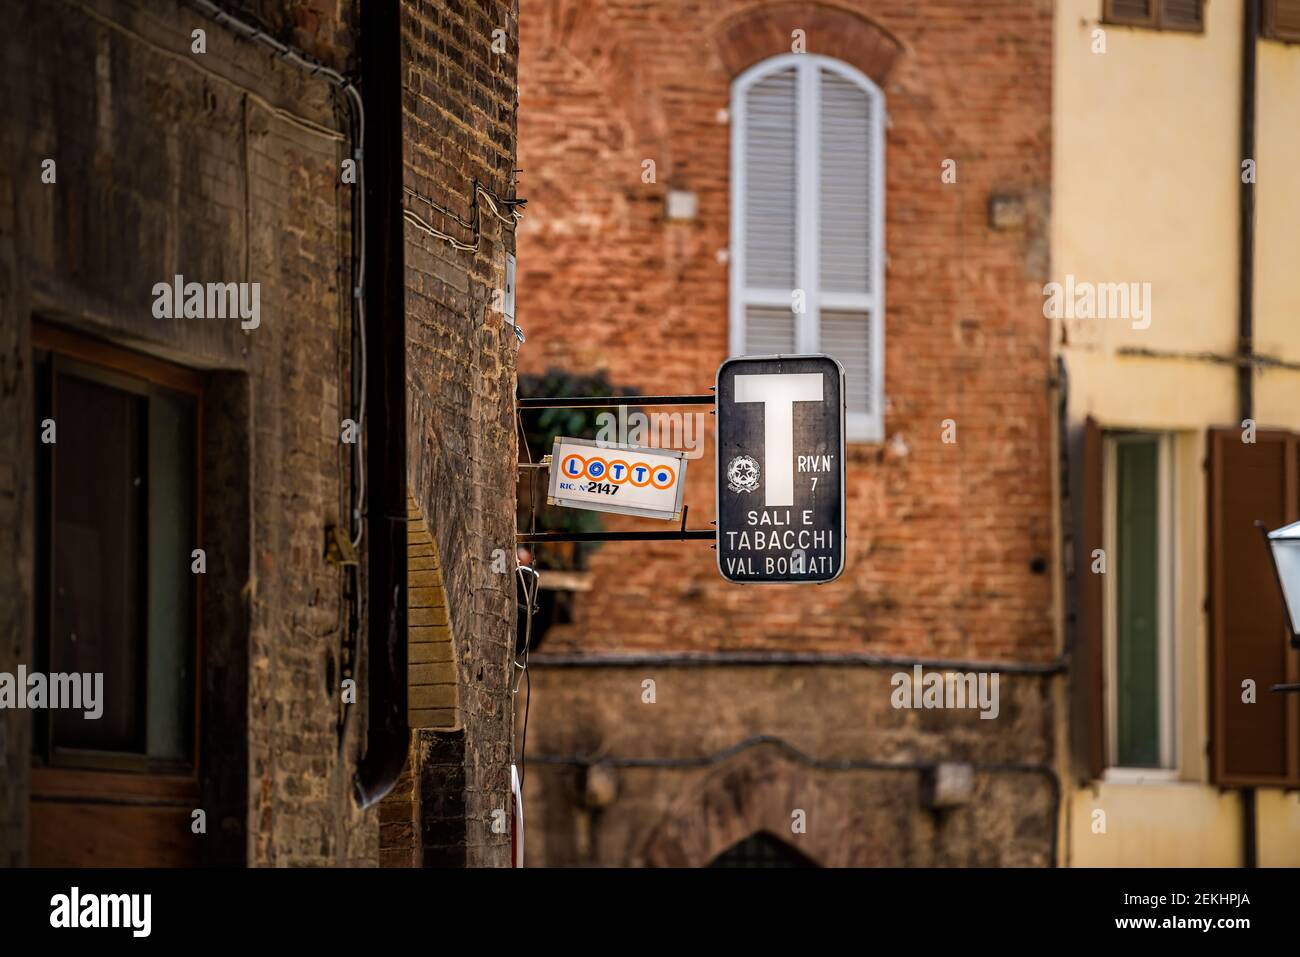 Siena, Italien - 27. August 2018: Gasse Straße in historischen mittelalterlichen Altstadt Dorf in der Toskana mit Zeichen für Lotto und sali e tabacchi Stockfoto